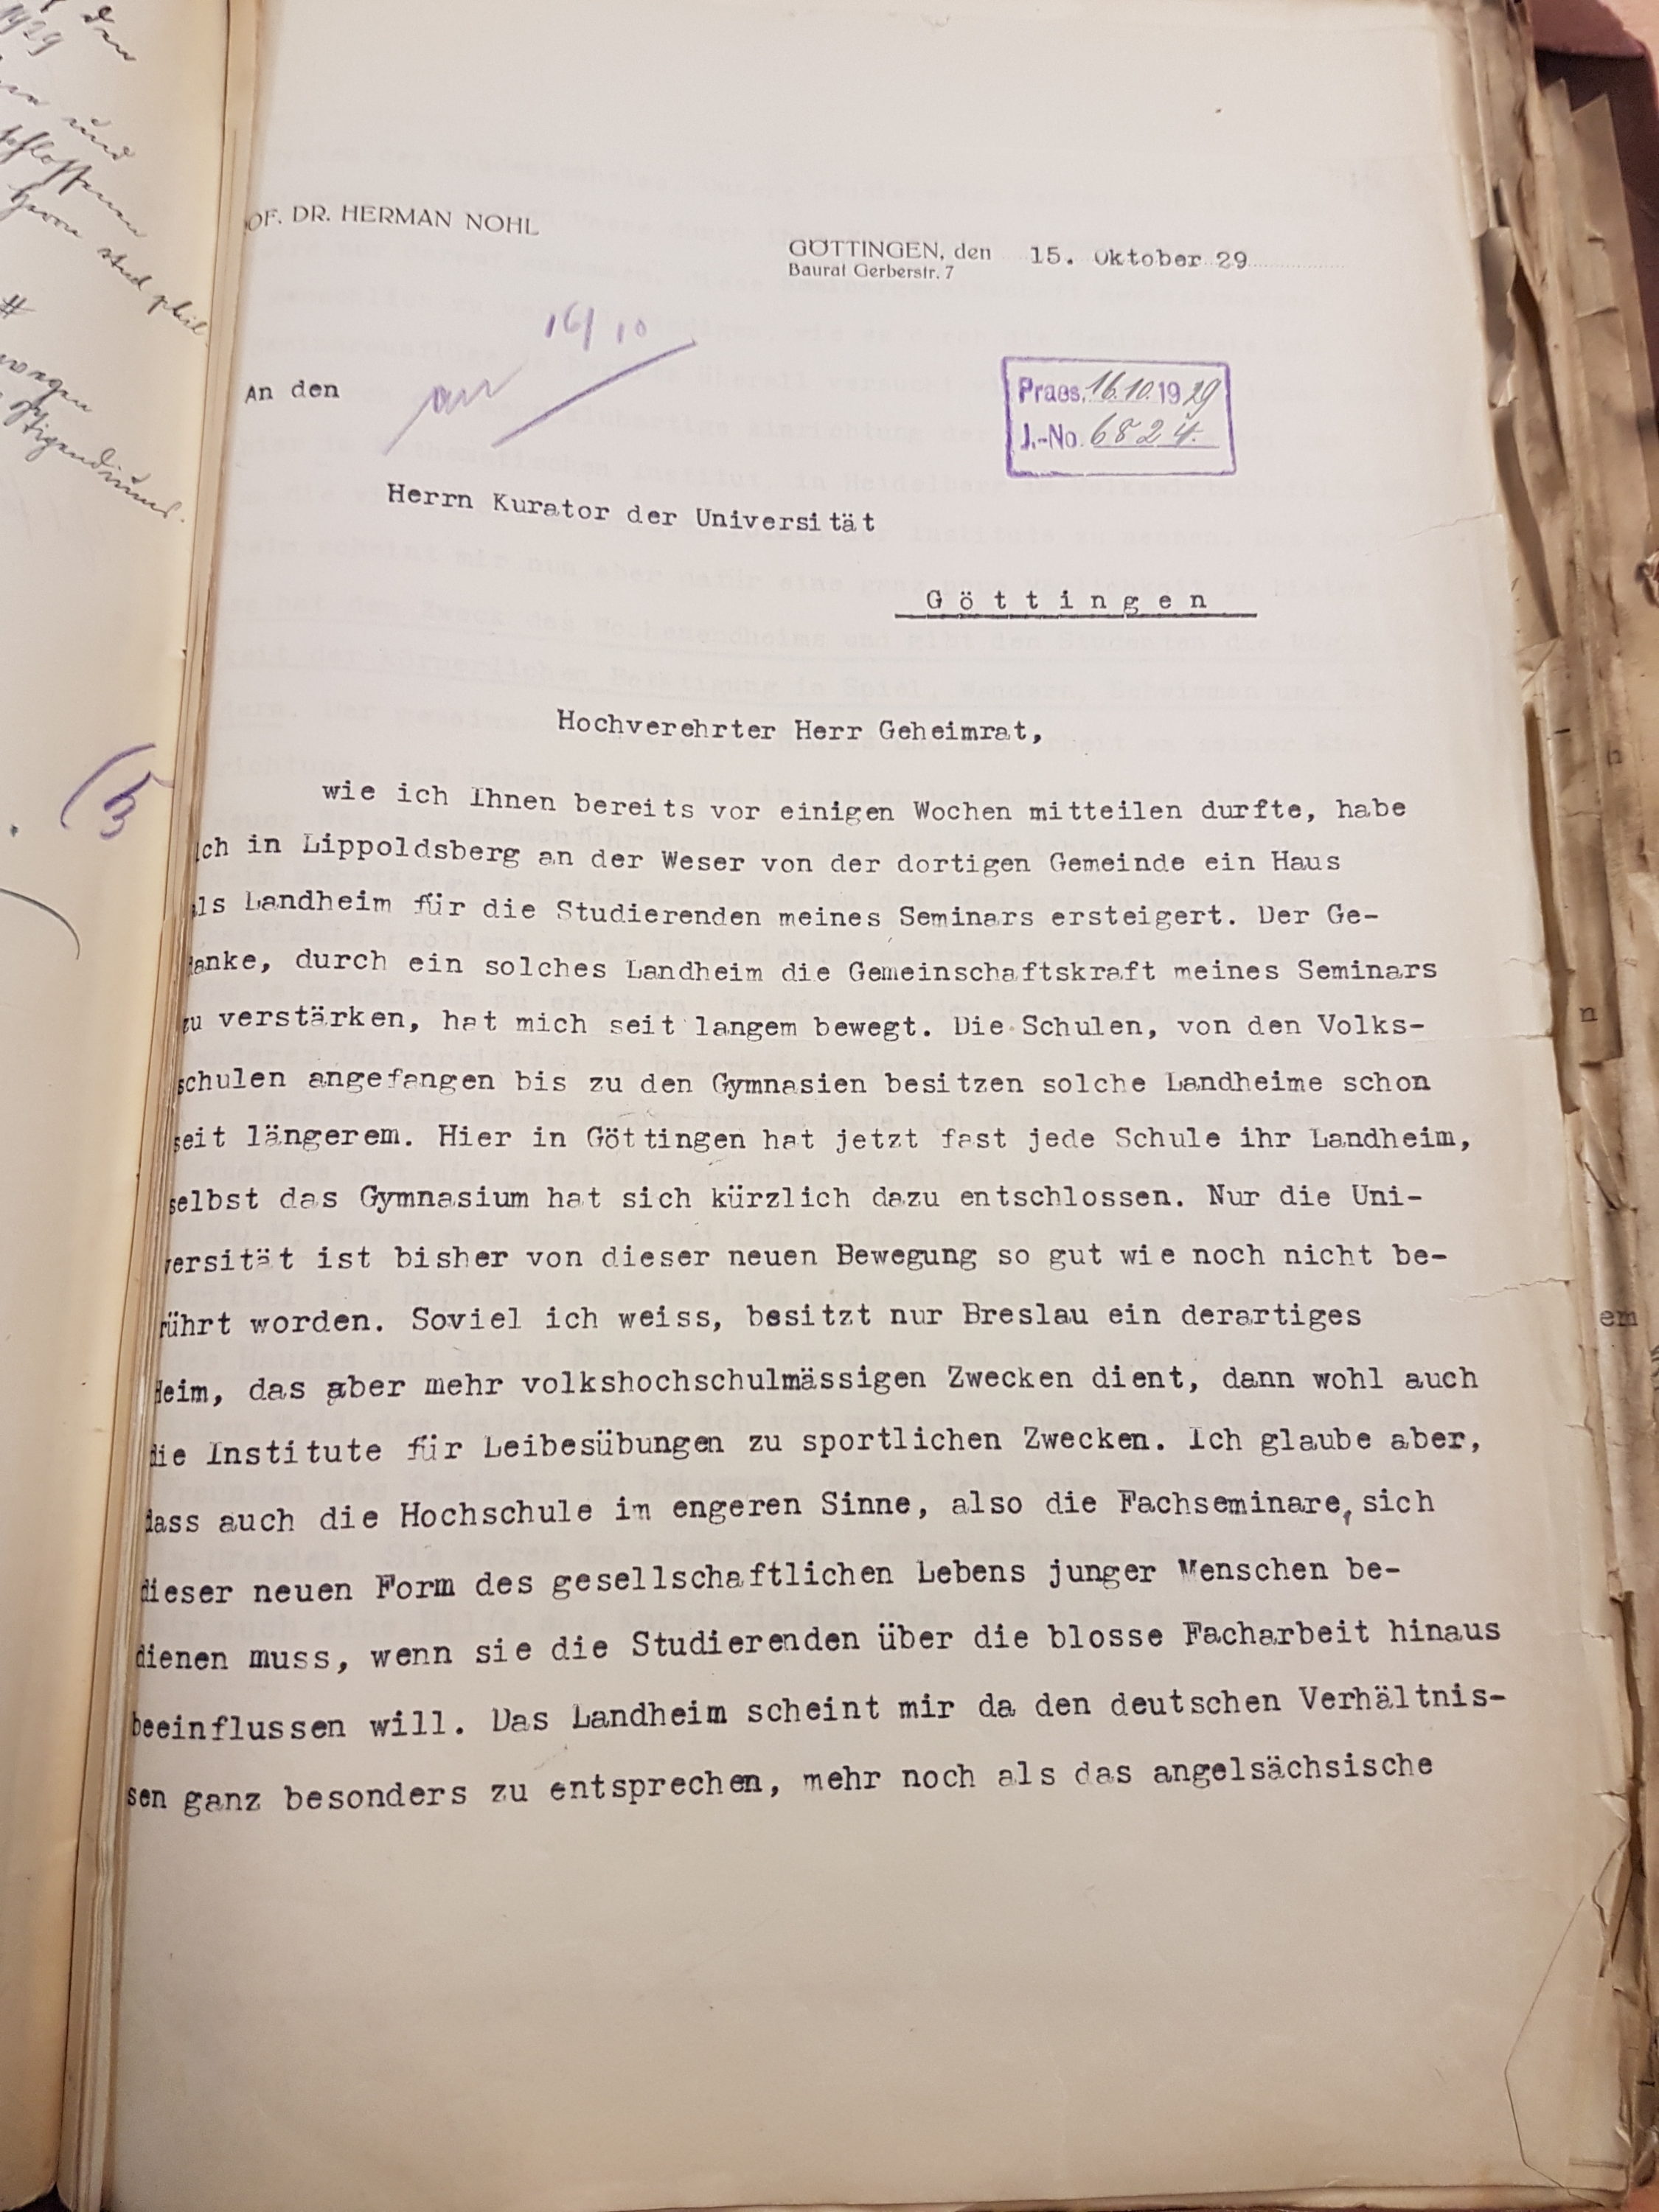 Brief Nohls vom 15.10.1929 an den Kurator der Universität betreffend die Ersteigerung eines Hauses als Landheim in Lippoldsberg, Seite 1. Quelle: Universitätsarchiv Göttingen: Kur. 1263; unpag.